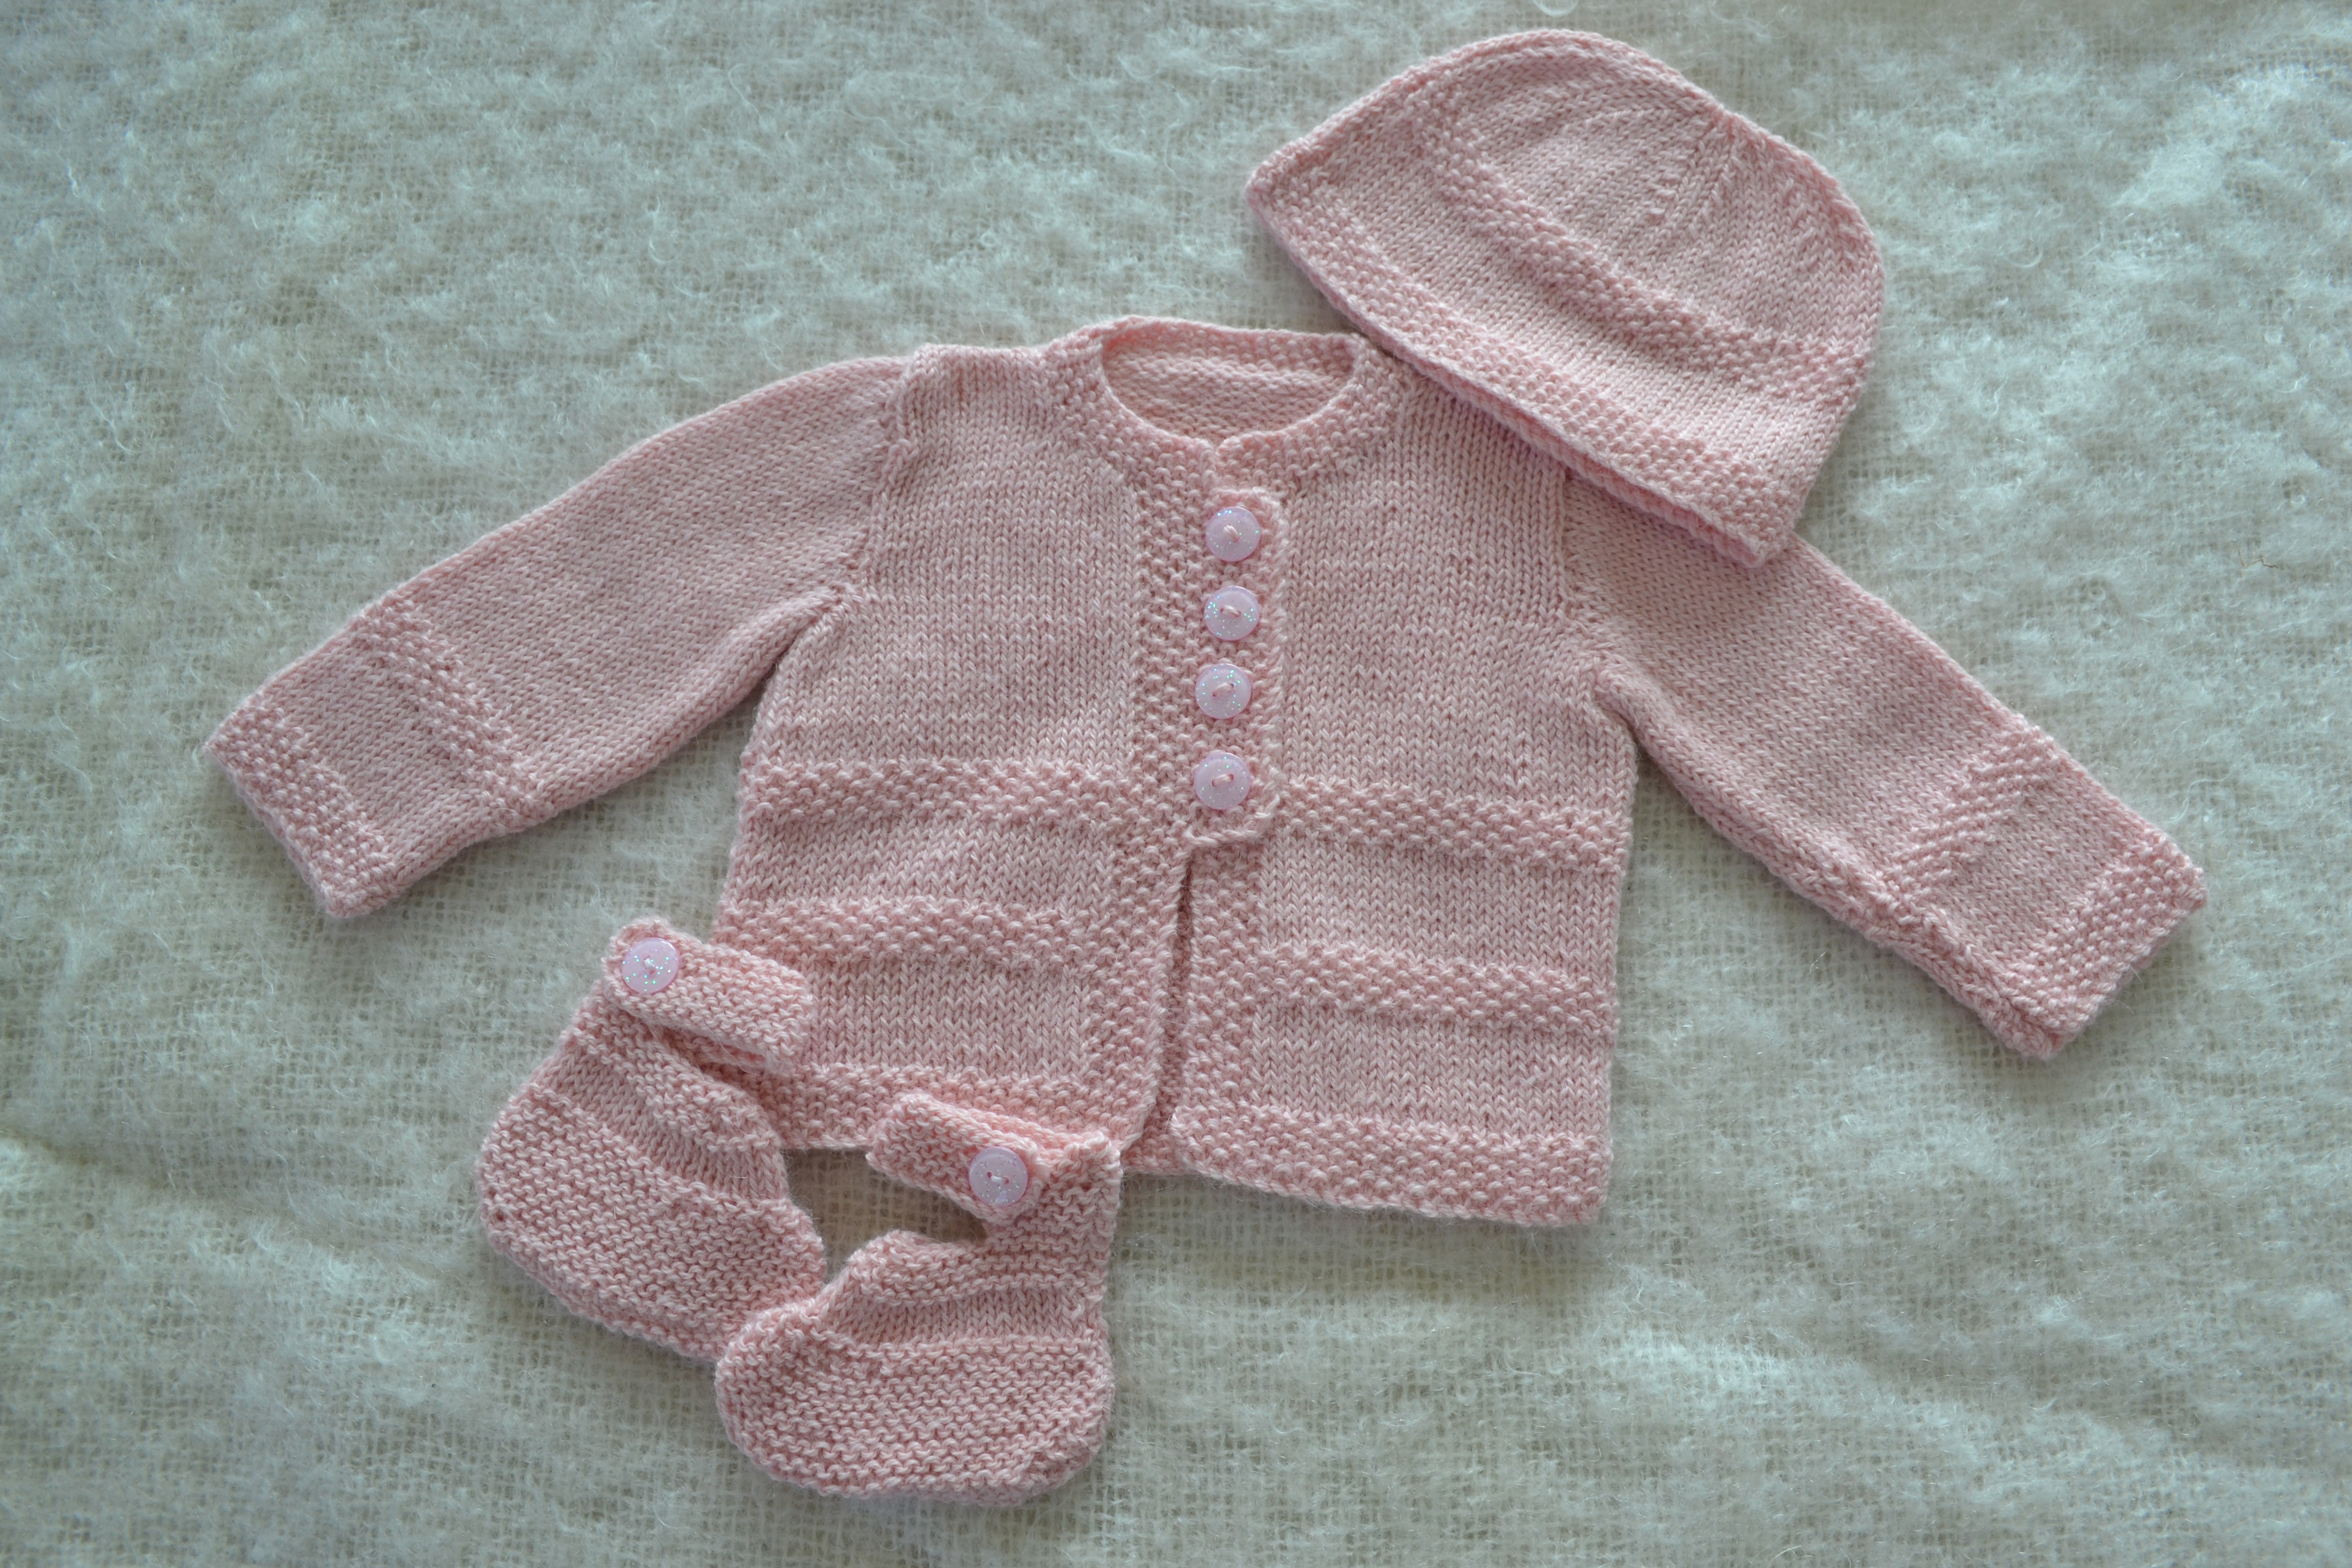 Free Double Knit Baby Cardigan Patterns Newborn Ba Dress Knitting Patterns